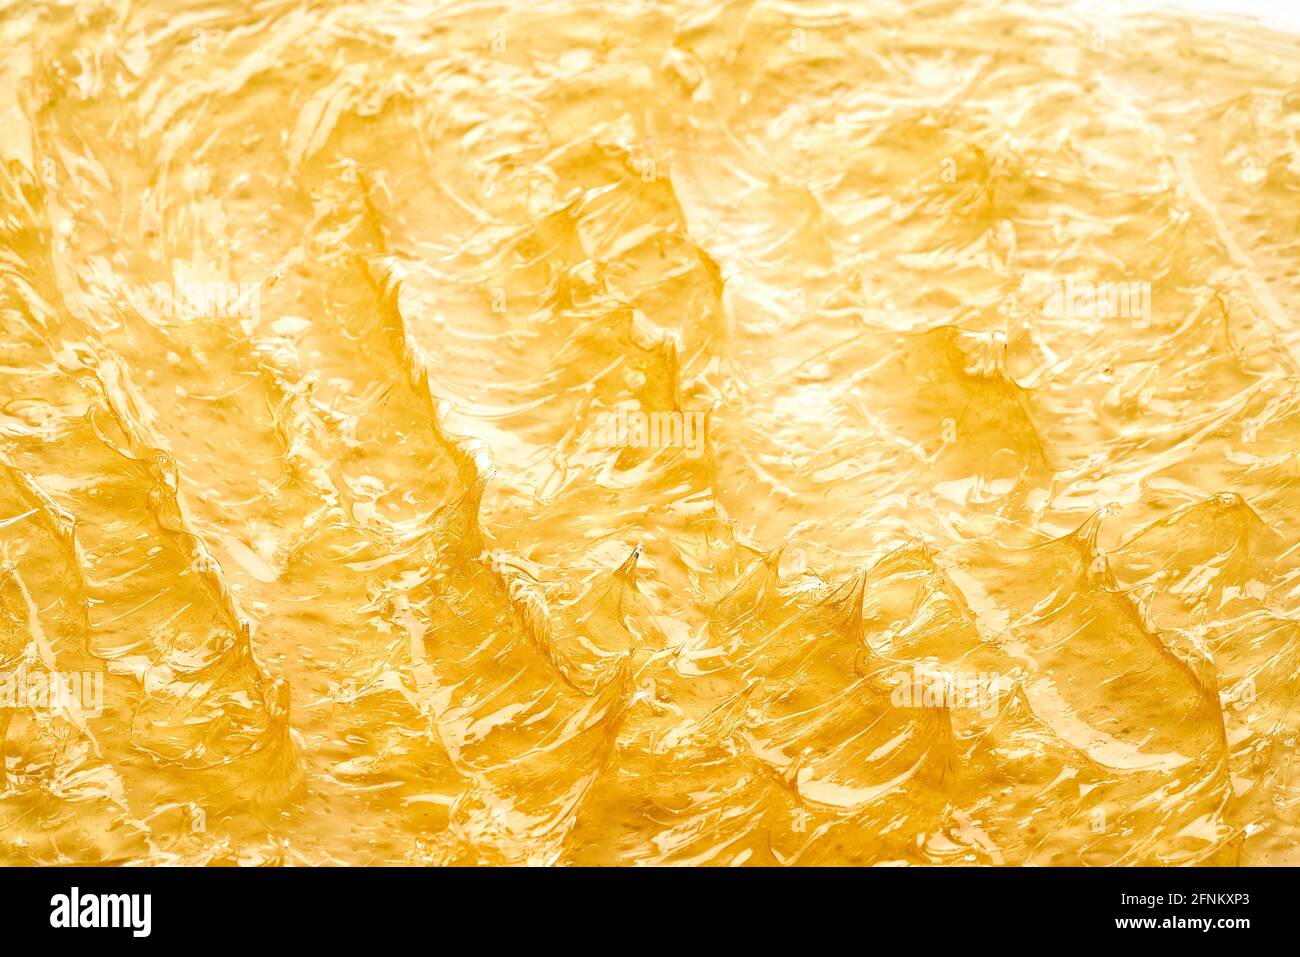 Transparenter gelber Abstrich von Gesichtscreme oder goldenem Honig isoliert auf weißem Hintergrund. Goldene cremige Textur auf weißem Hintergrund. Stockfoto